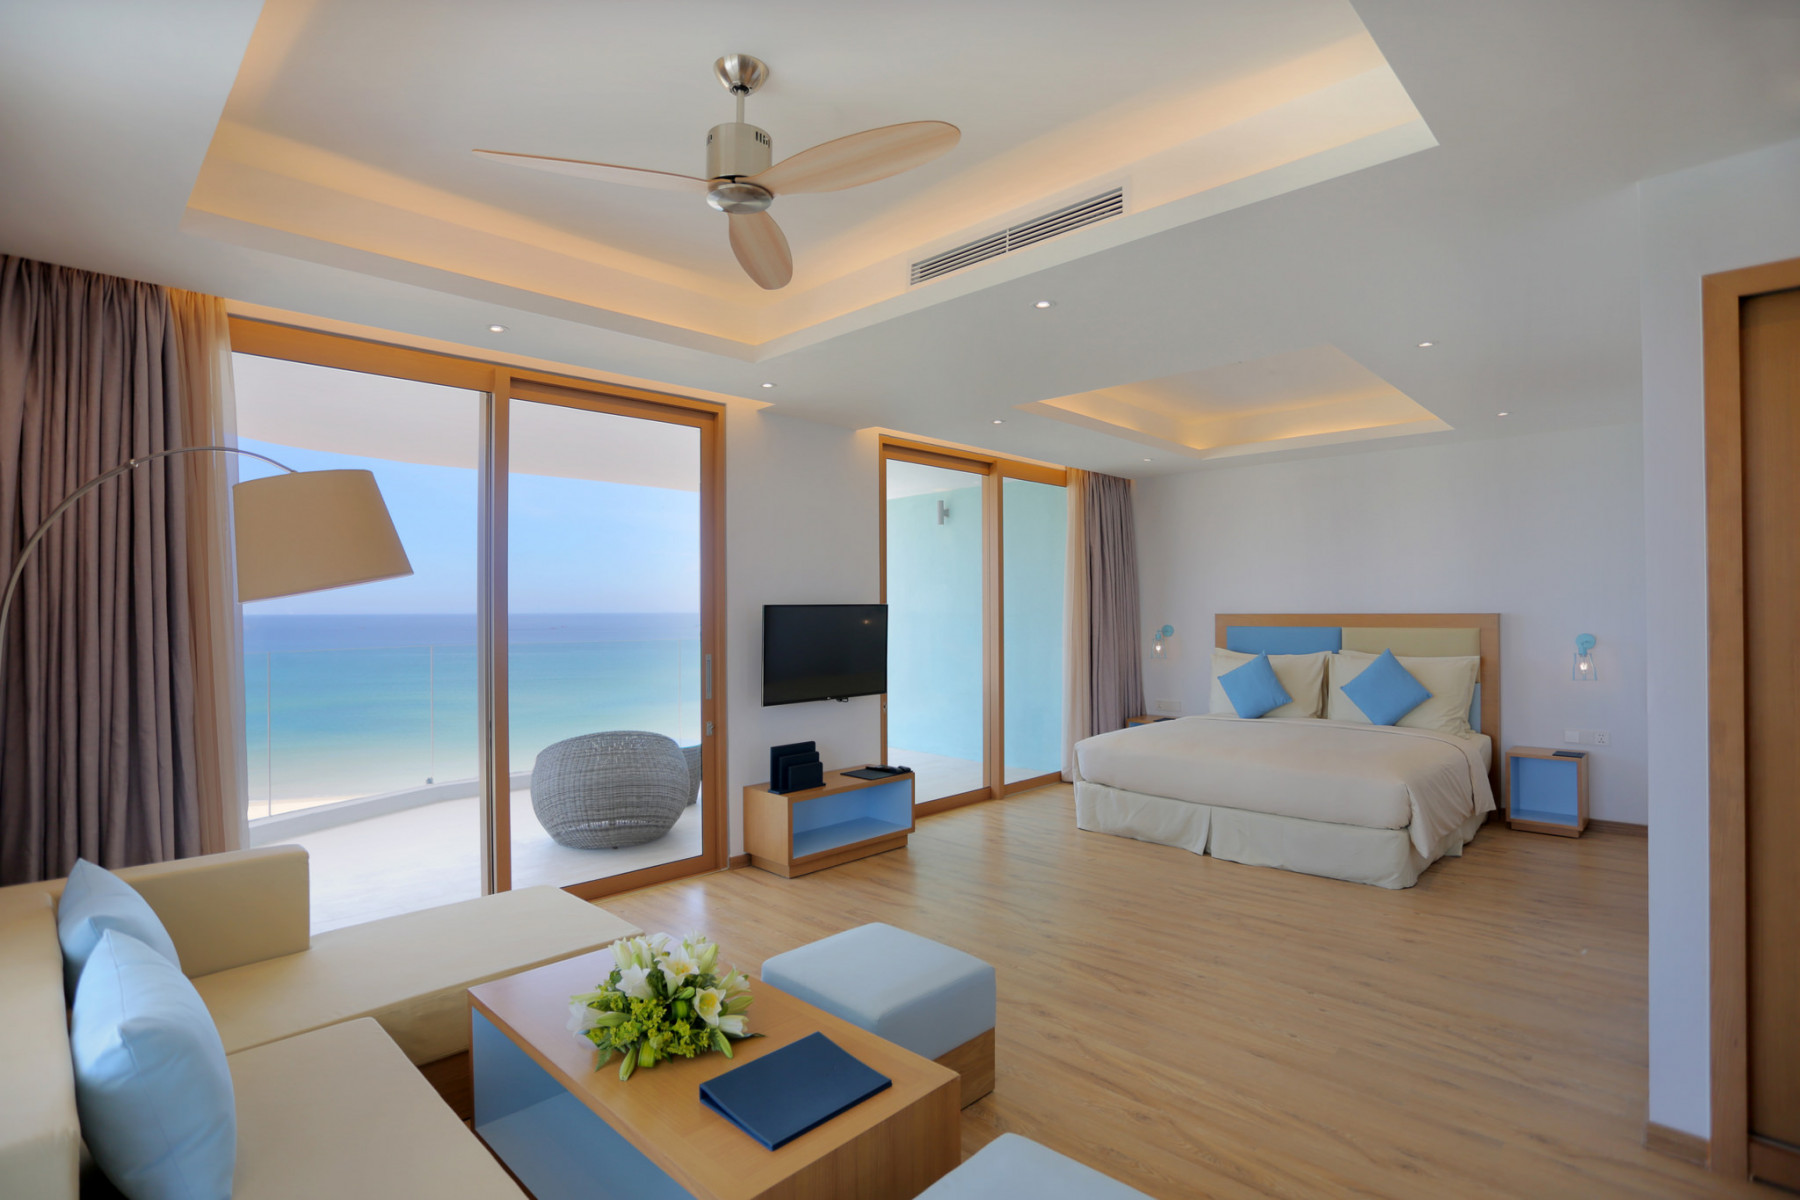 Đặc biệt nổi bật với tầm nhìn rộng hướng biển làm cho căn phòng thêm đắt giá